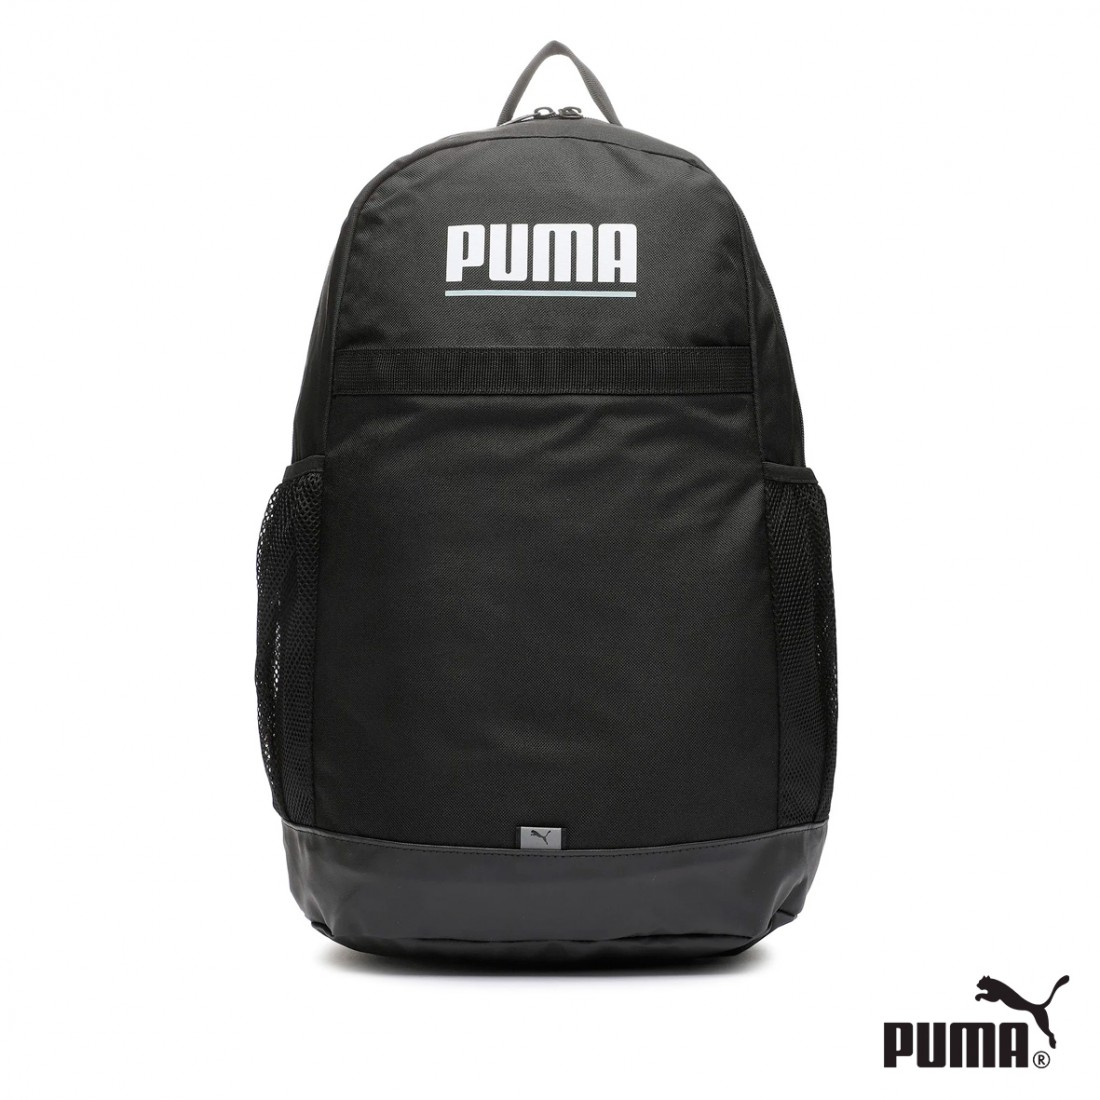 Puma puma s backpack Mochila de Hombre